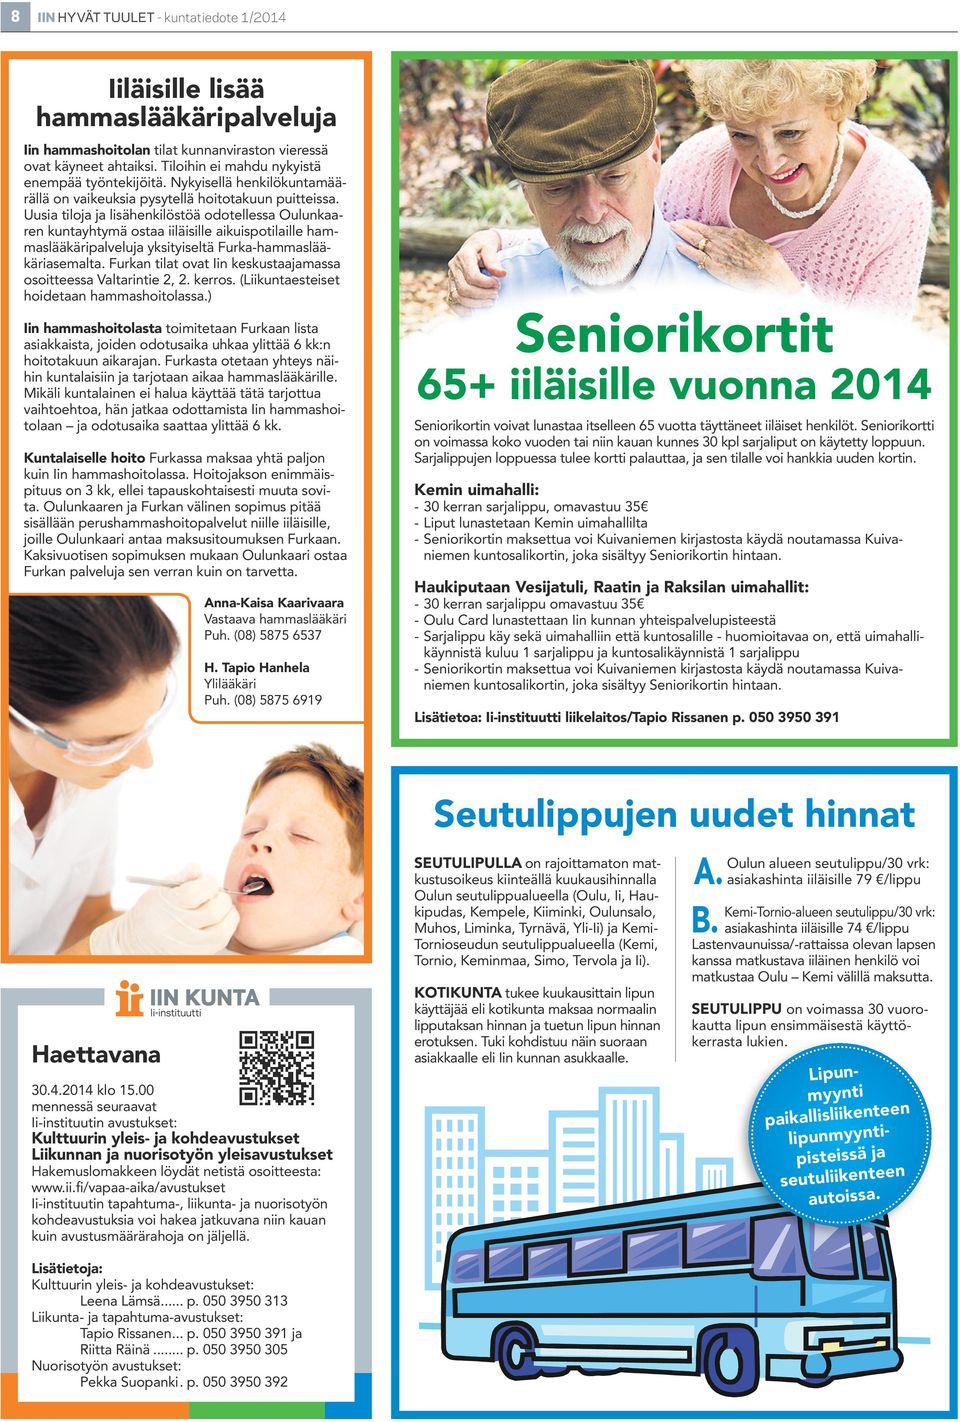 Uusia tiloja ja lisähenkilöstöä odotellessa Oulunkaaren kuntayhtymä ostaa iiläisille aikuispotilaille hammaslääkäripalveluja yksityiseltä Furka-hammaslääkäriasemalta.